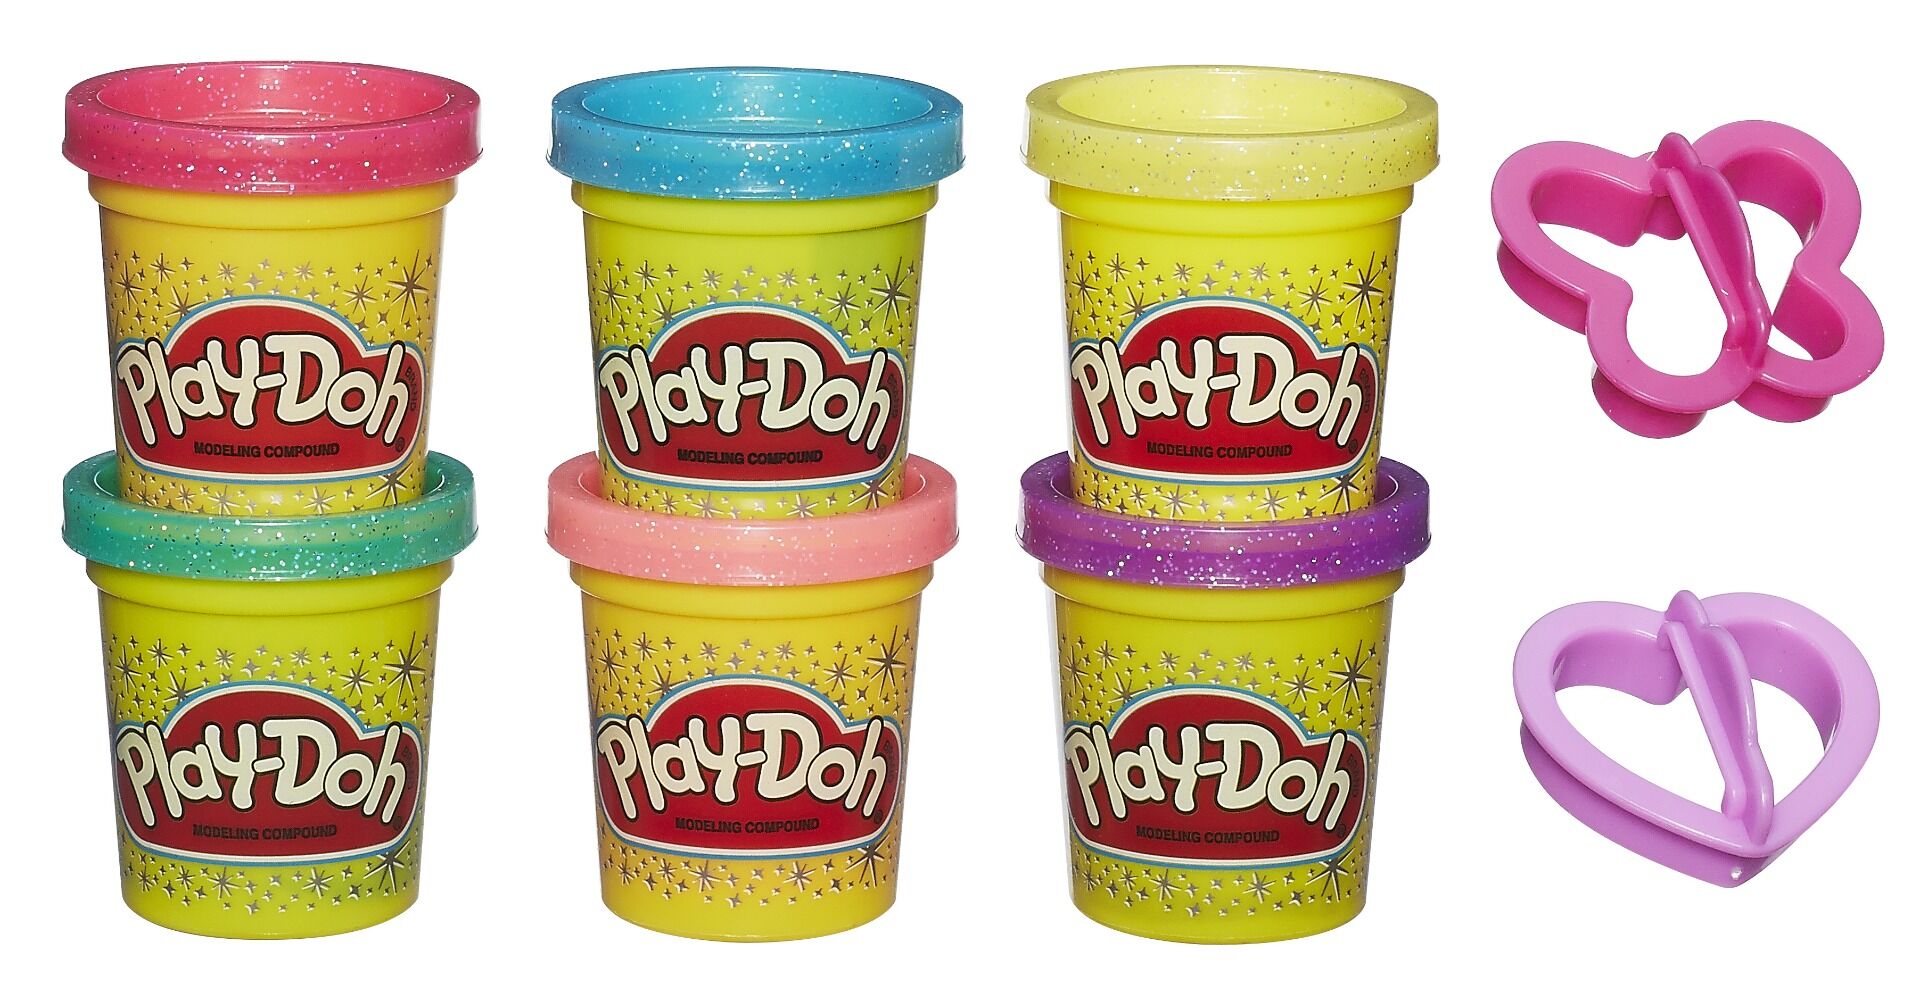 Pachet 6 cutii Play-Doh cu sclipici